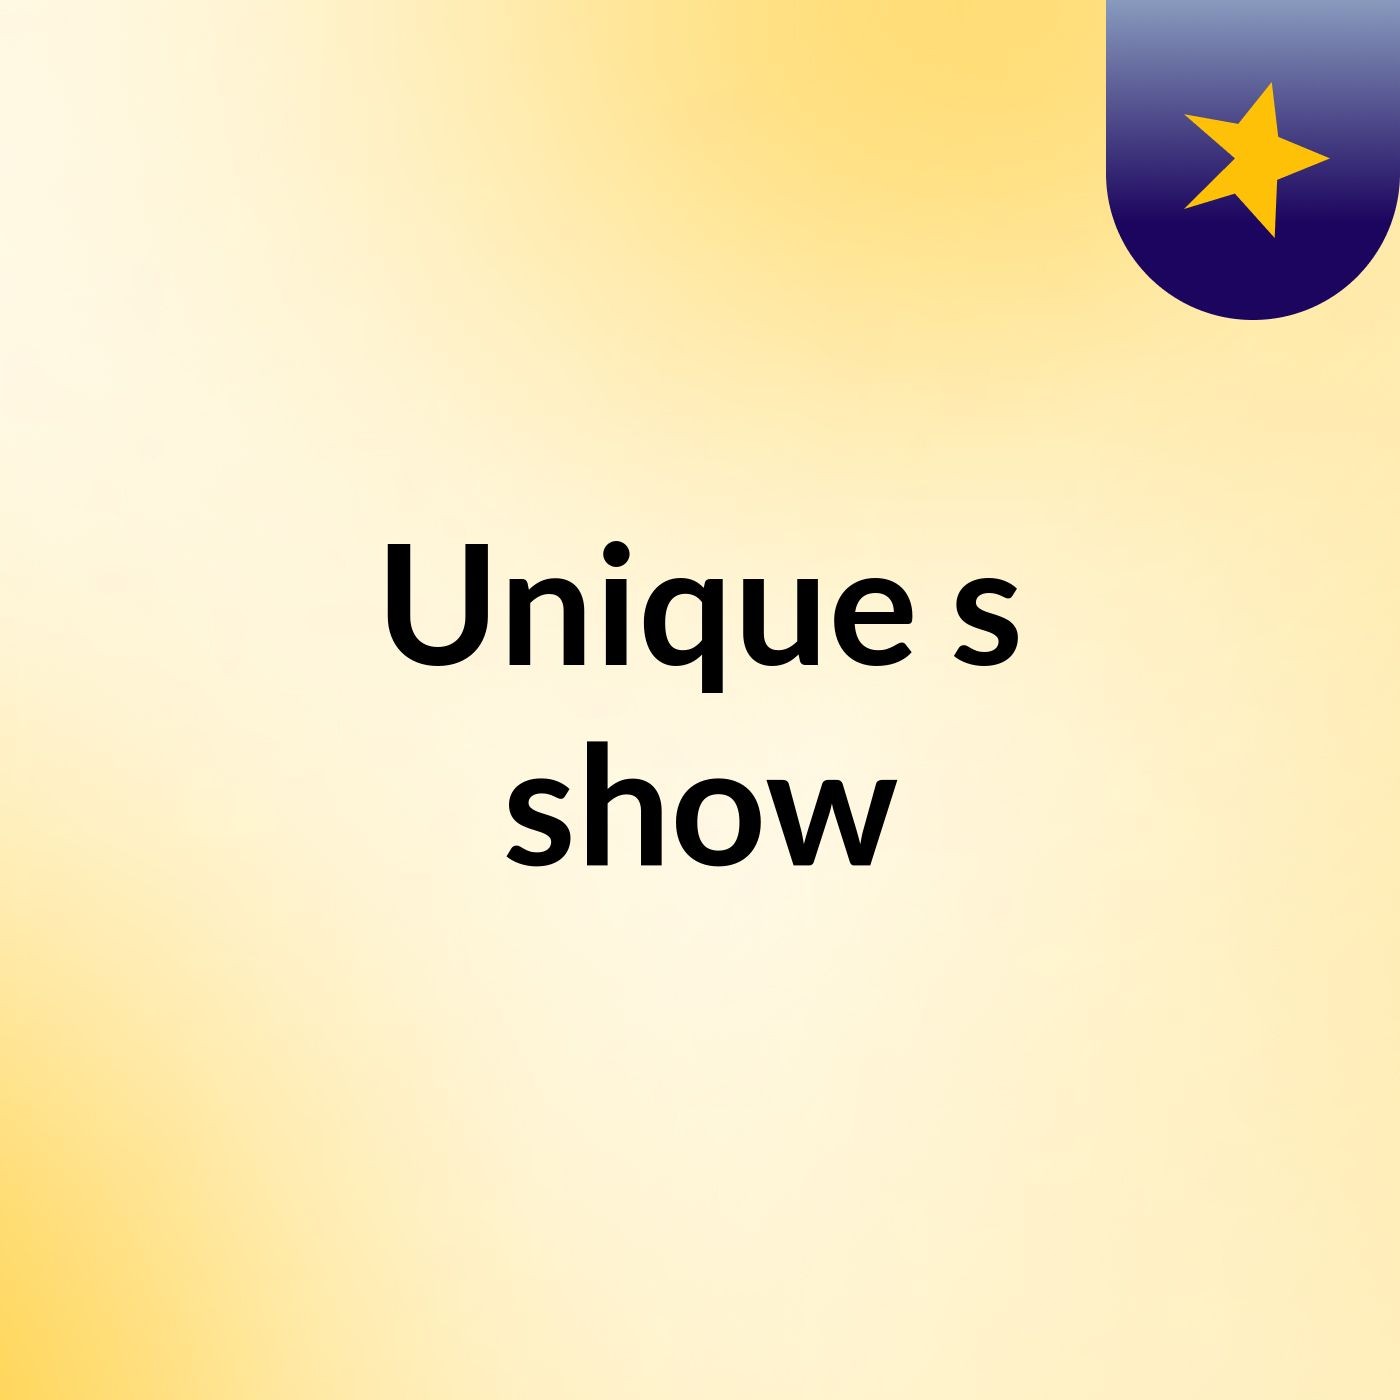 Unique's show